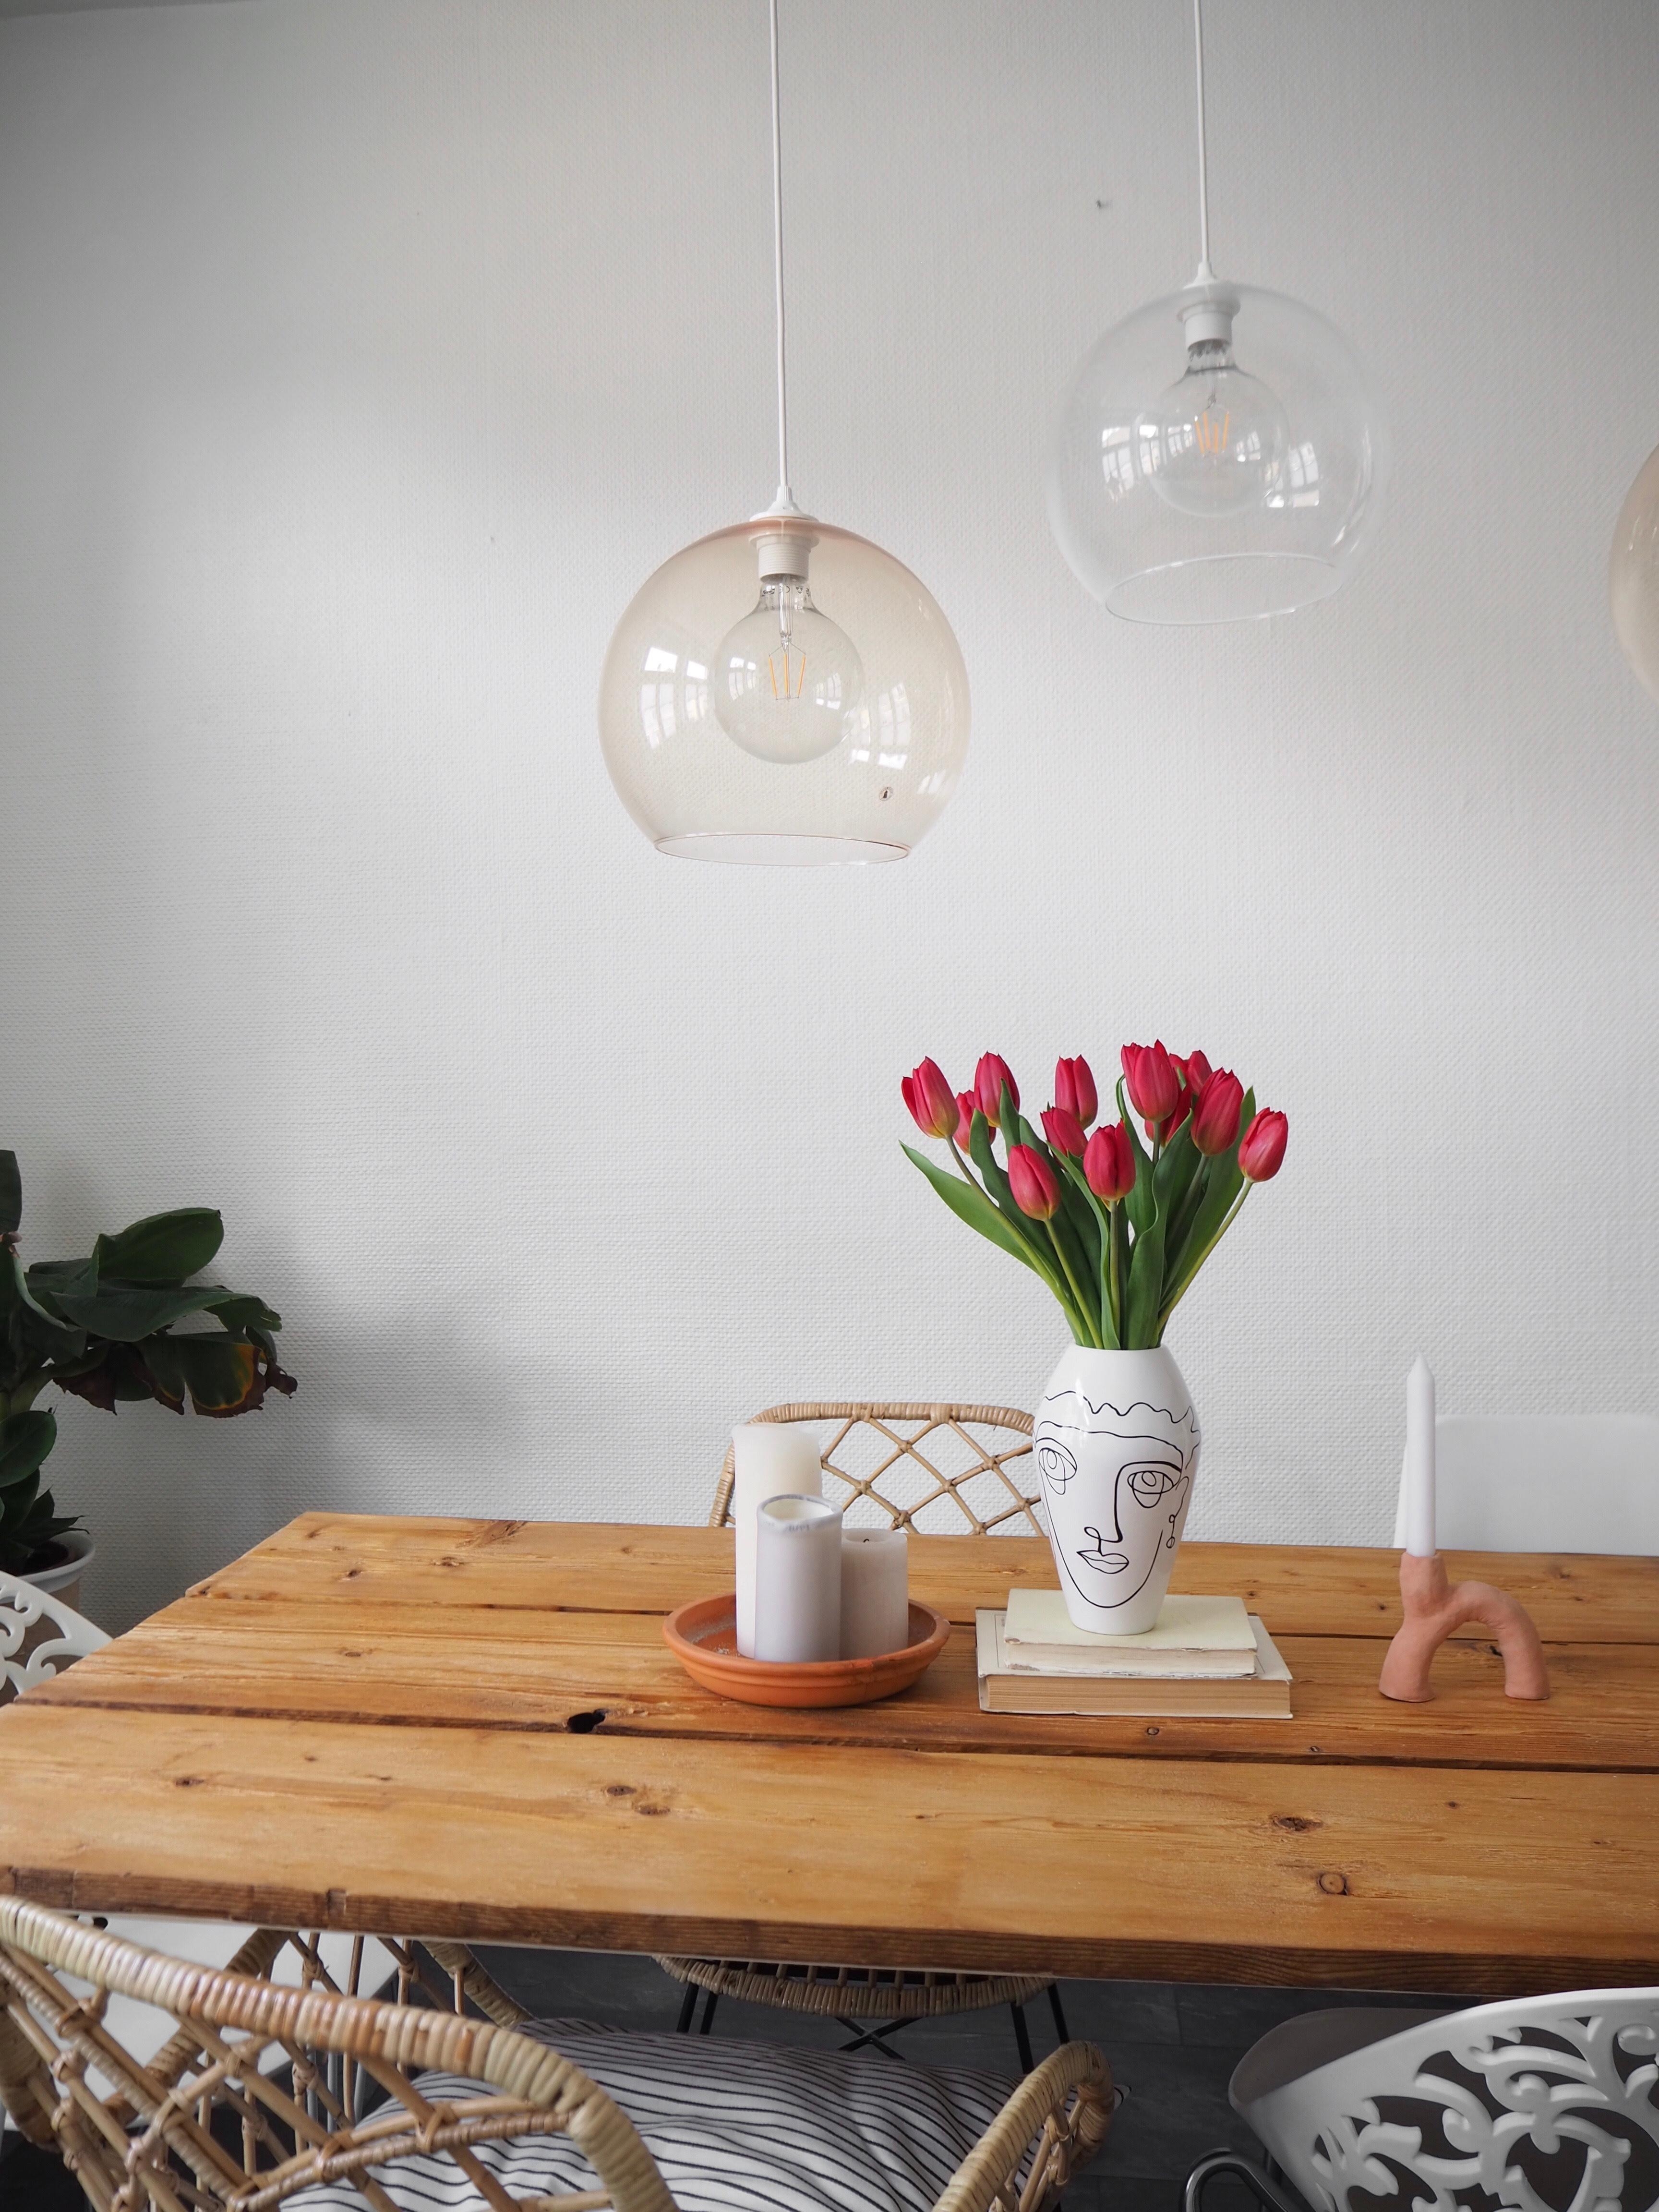 Liebe den Singleline Trend 🌷#blumenstrauss #tulpen #freshflowers #vase #singleline #diytisch